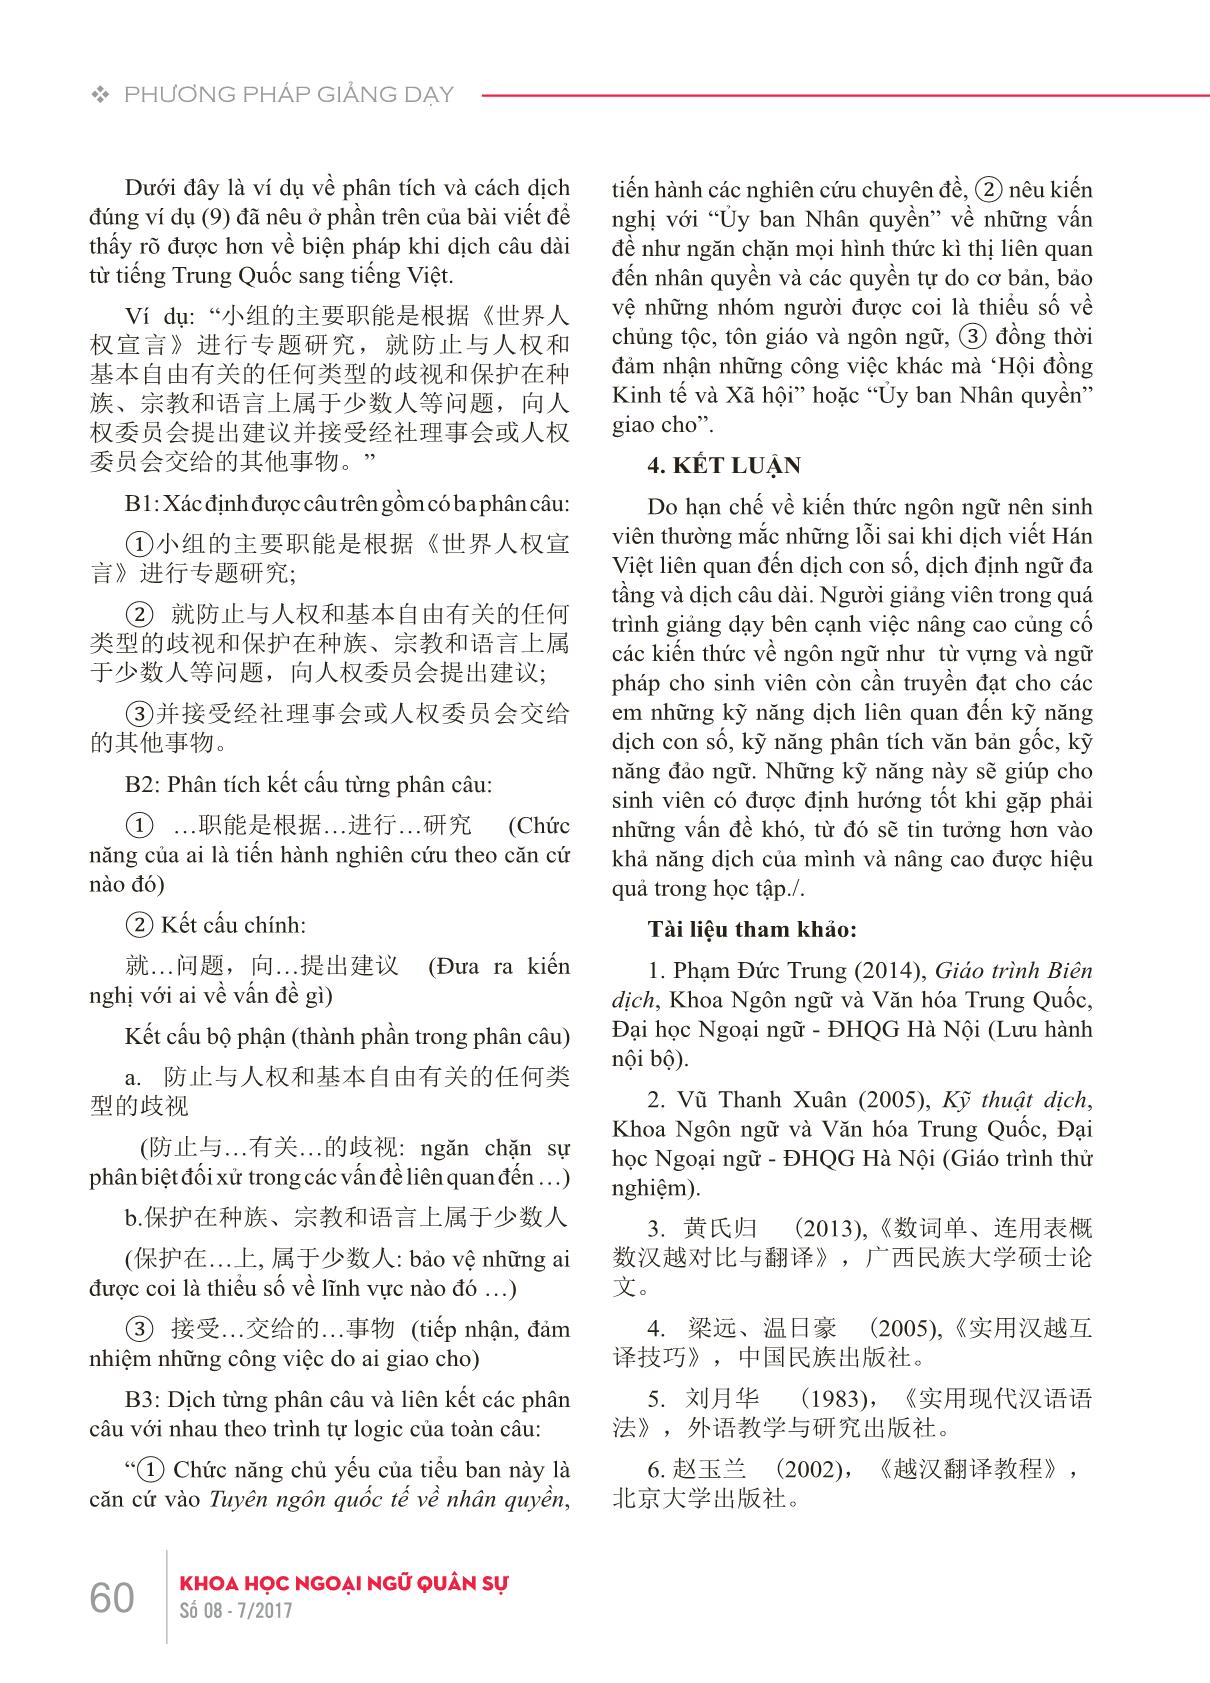 Những lỗi sai thường gặp của sinh viên khi dịch viết Hán-Việt do hạn chế về kiến thức ngôn ngữ và giải pháp trong giảng dạy trang 7